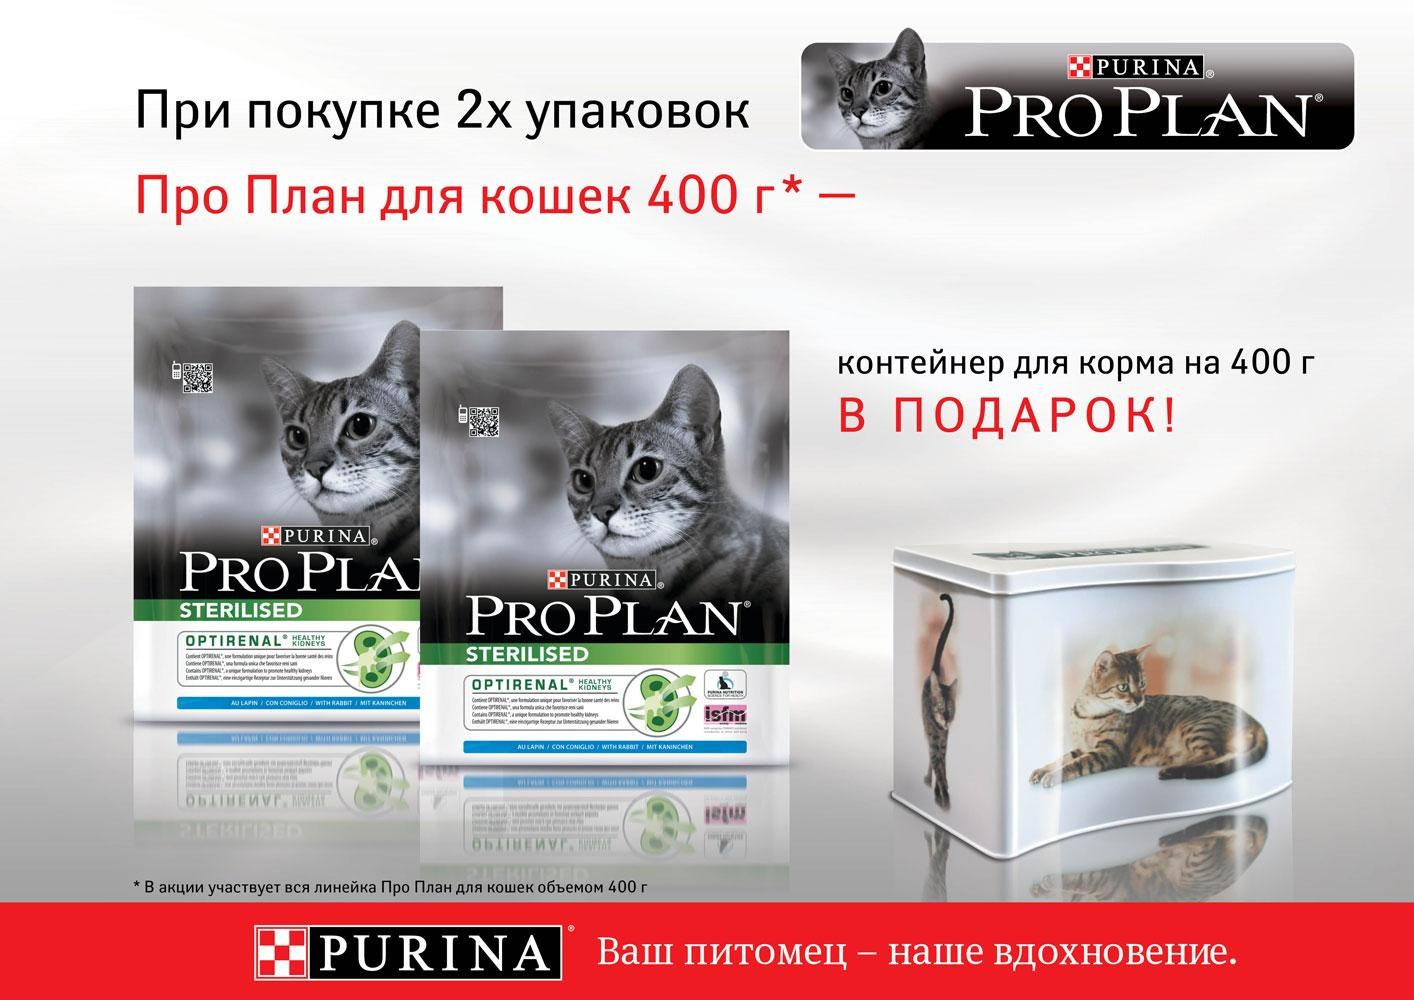 Купить корм проплан в москве. Purina Pro Plan корм Purina Pro Plan. Корма для кошек Пурина Проплан. Purina Pro Plan баннер. Пурина про план для кошек.